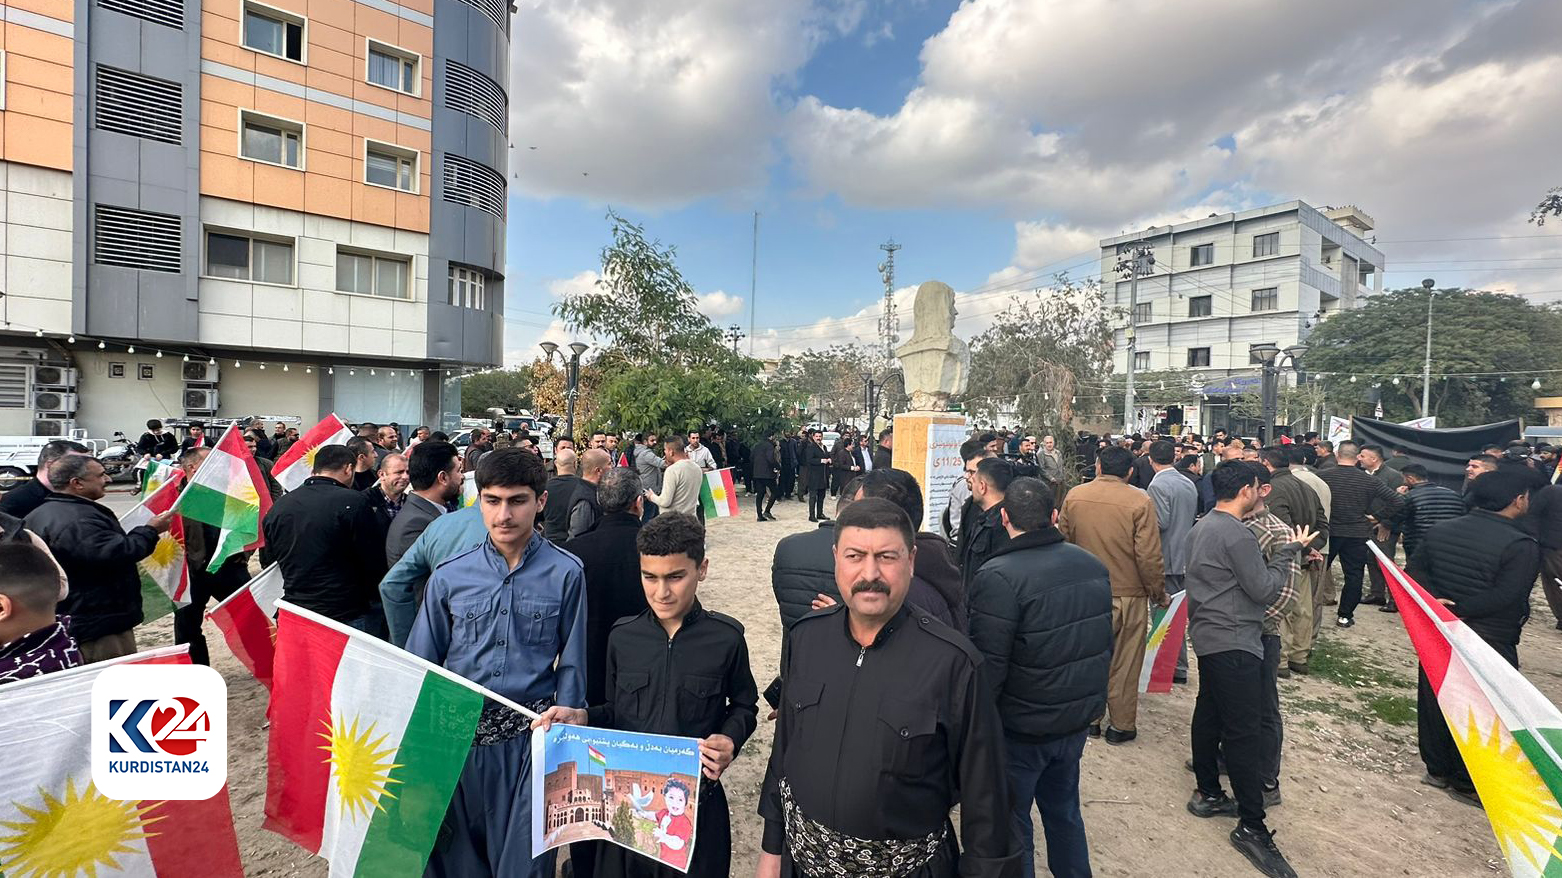 Kelar’da vatandaşlar İran’ın Erbil saldırılarına karşı gösteri düzenledi